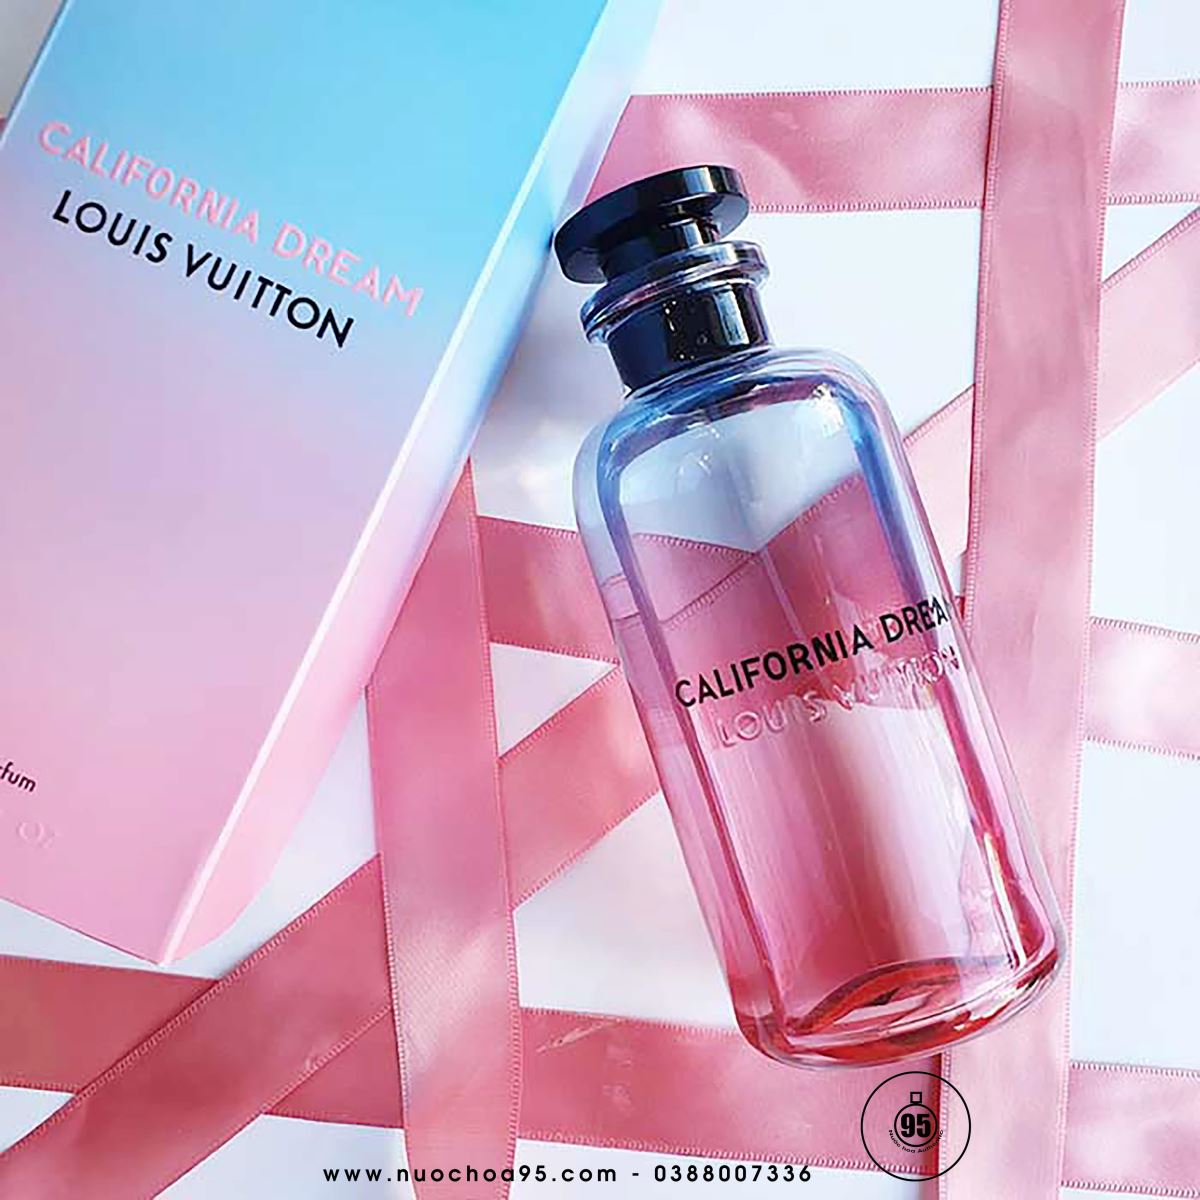 Nước hoa Louis Vuitton California Dream - Ảnh 1